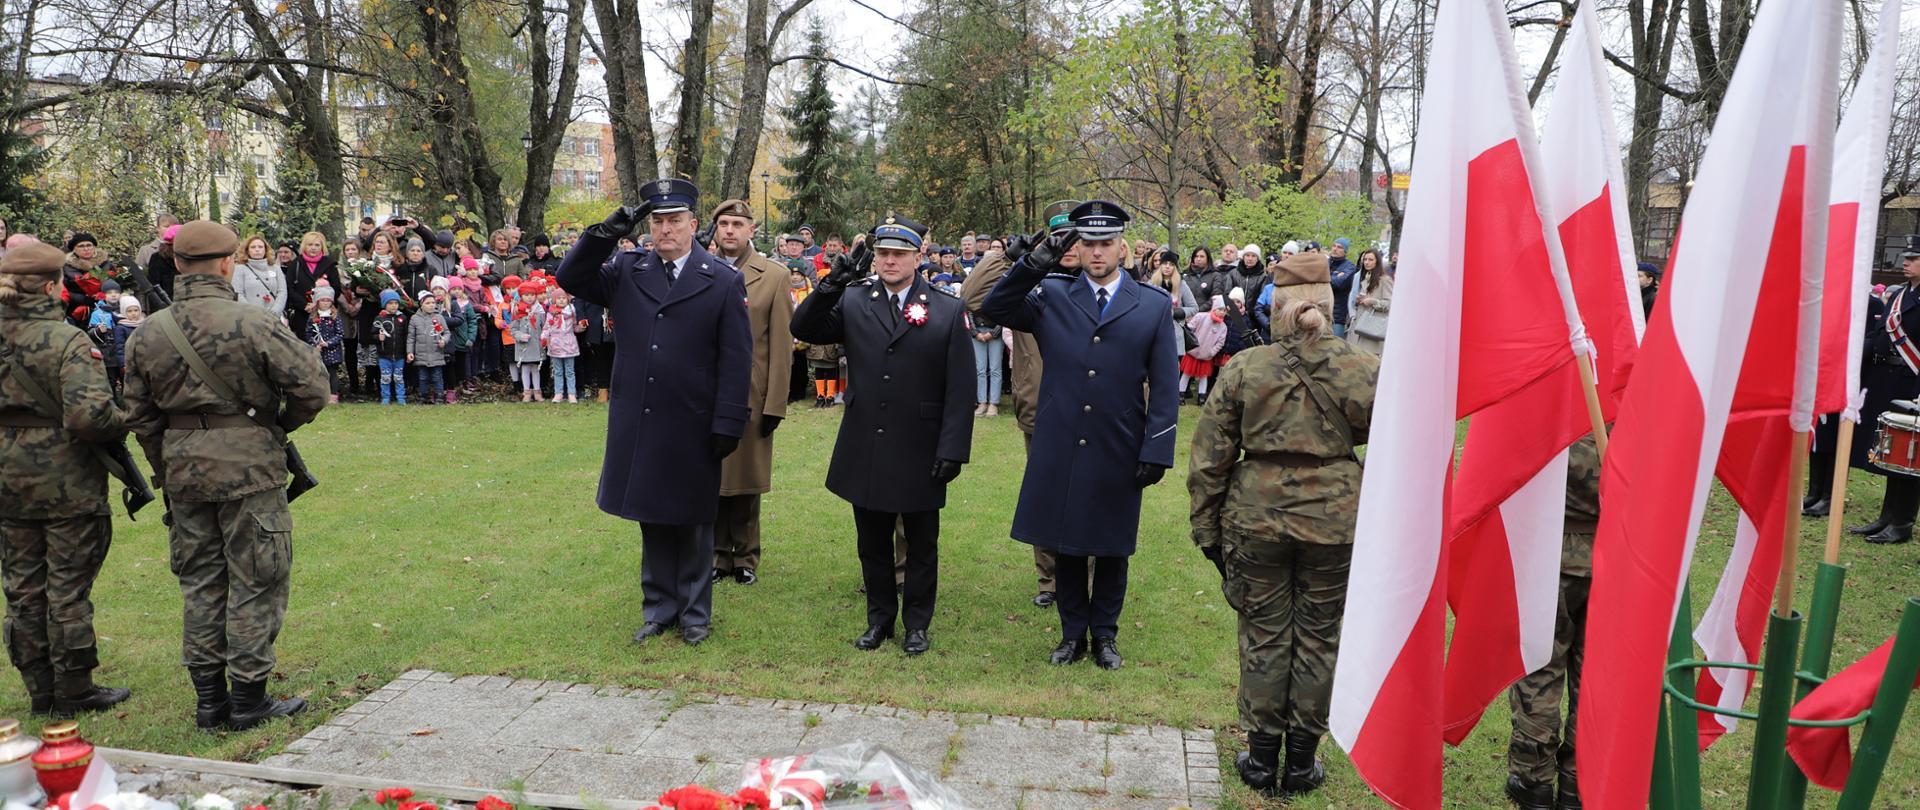 Złożenie kwiatów pod pomnikiem "Ofiarom Wojen, Przemocy i Represji 91” z okazji Święta Niepodległości